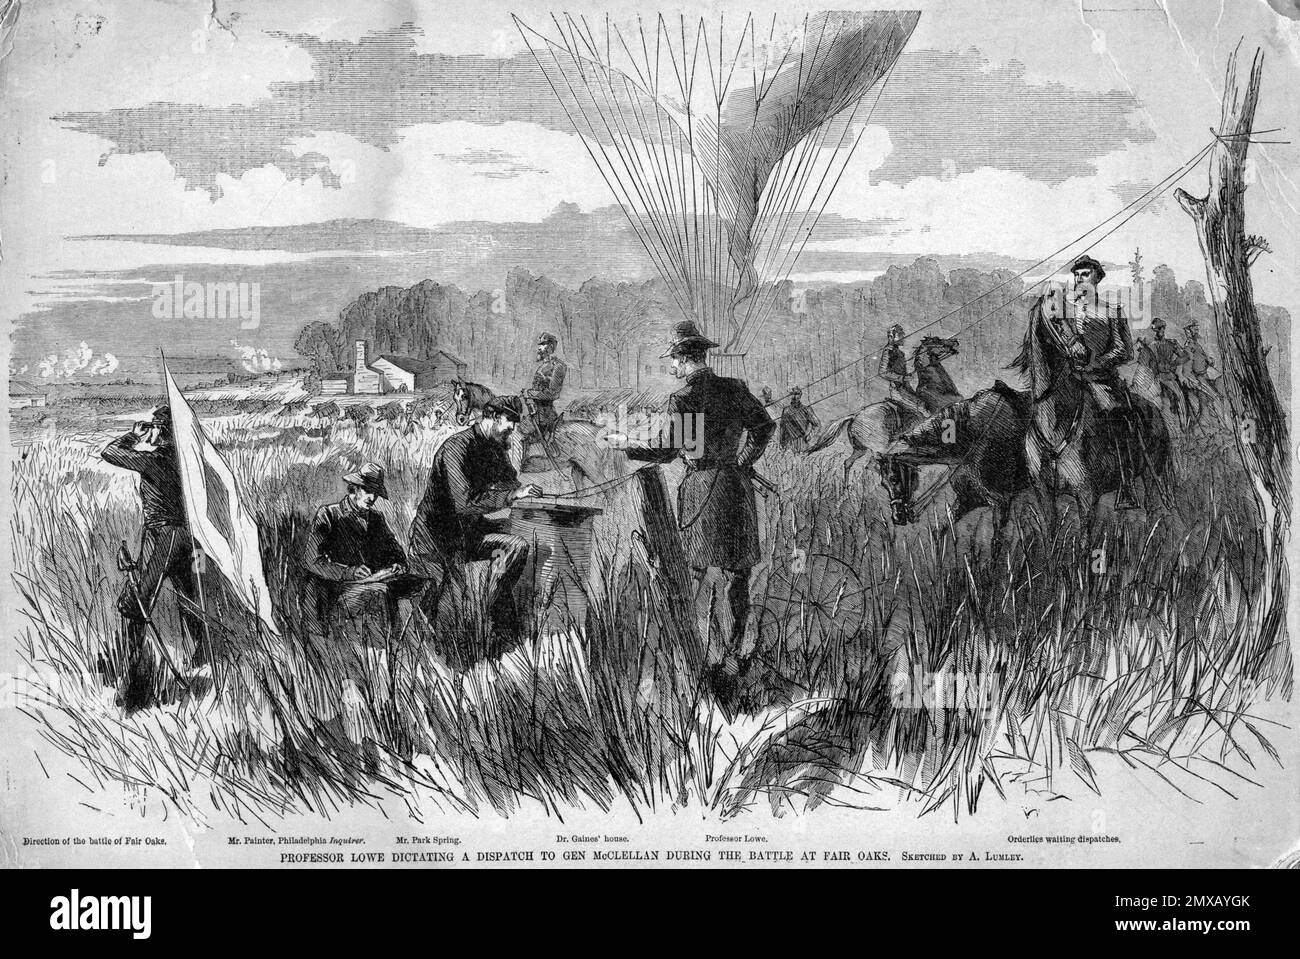 La Battaglia di sette pini (nota anche come Battaglia di Fair Oaks o Fair Oaks Station) si è svolta il 31 maggio e il 1 giugno 1862 nella contea di Henrico, in Virginia, come parte della campagna Peninsula della guerra civile americana. Fu il culmine di un'offensiva sulla penisola della Virginia guidata dal maggiore generale dell'Unione George McClellan, in cui l'esercito del Potomac raggiunse la periferia di Richmond. Questa immagine raffigura il Professor Lowe che dettava al Generale McClellan dopo essere stato in su nel pallone di osservazione. Il corpo mongolfiere dell'esercito dell'Unione era un'unità appena creata che era con le forze unioniste, usi Foto Stock